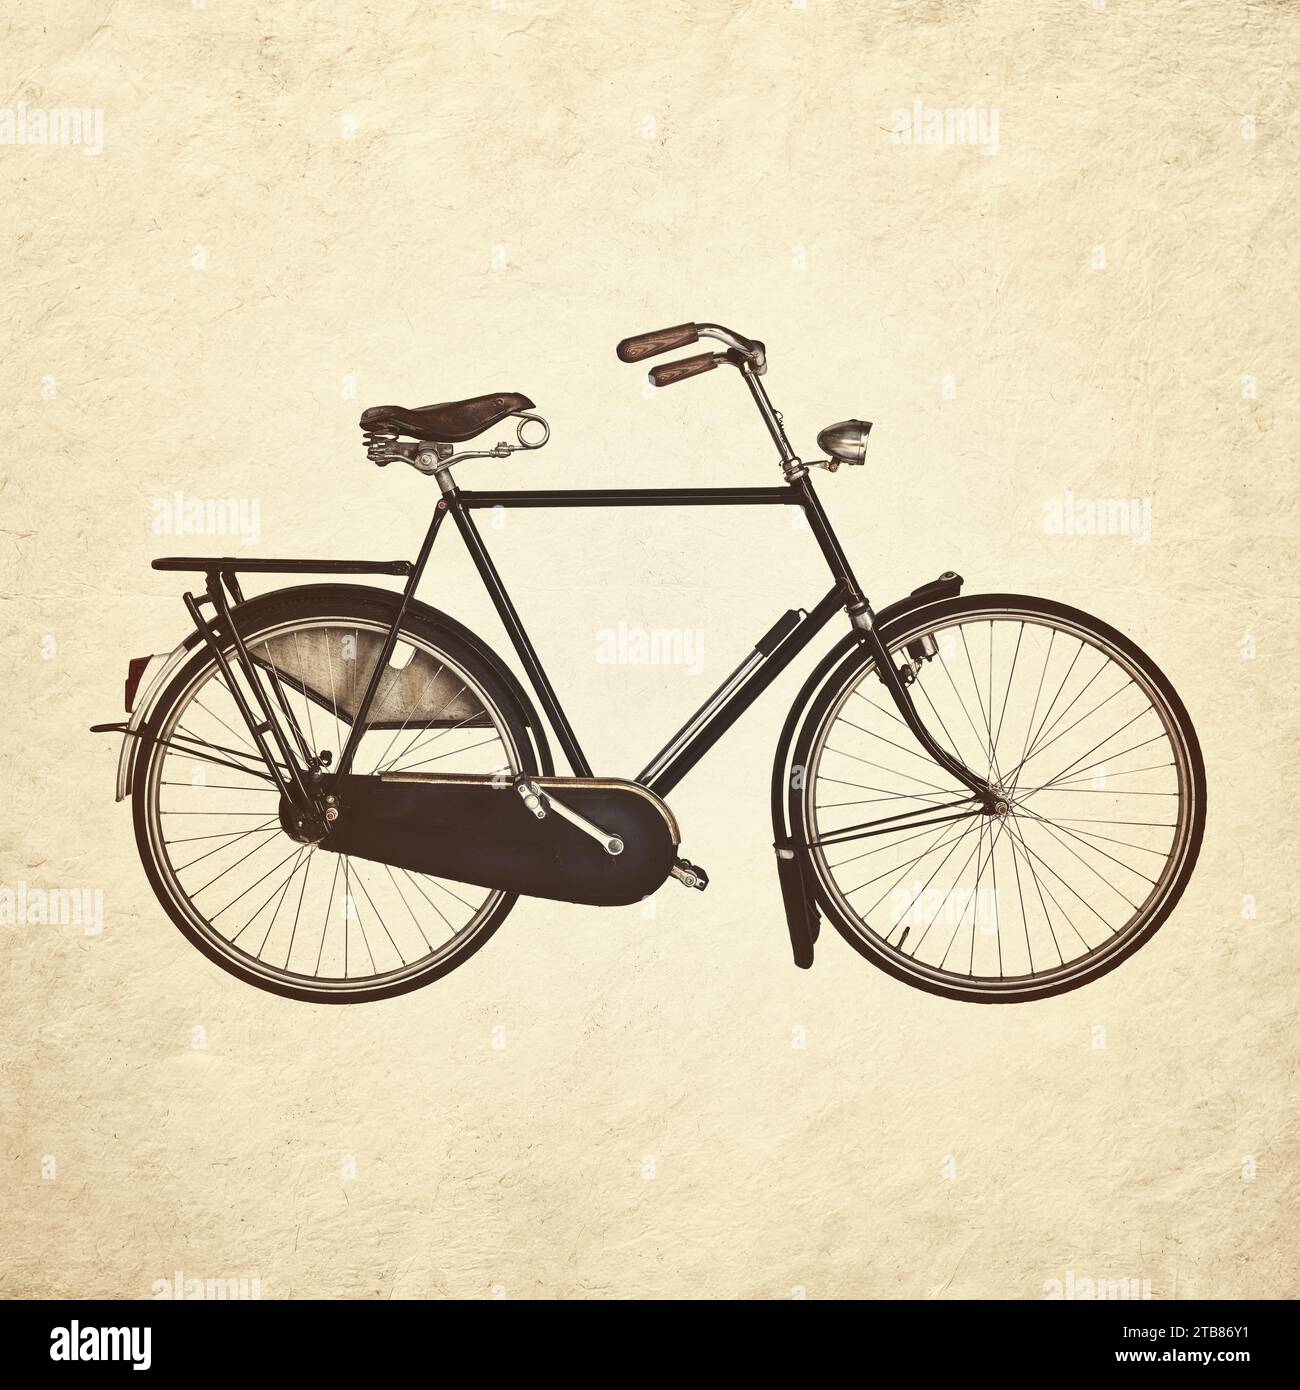 Immagine in tonalità seppia di una bicicletta da gentiluomo olandese d'epoca Foto Stock